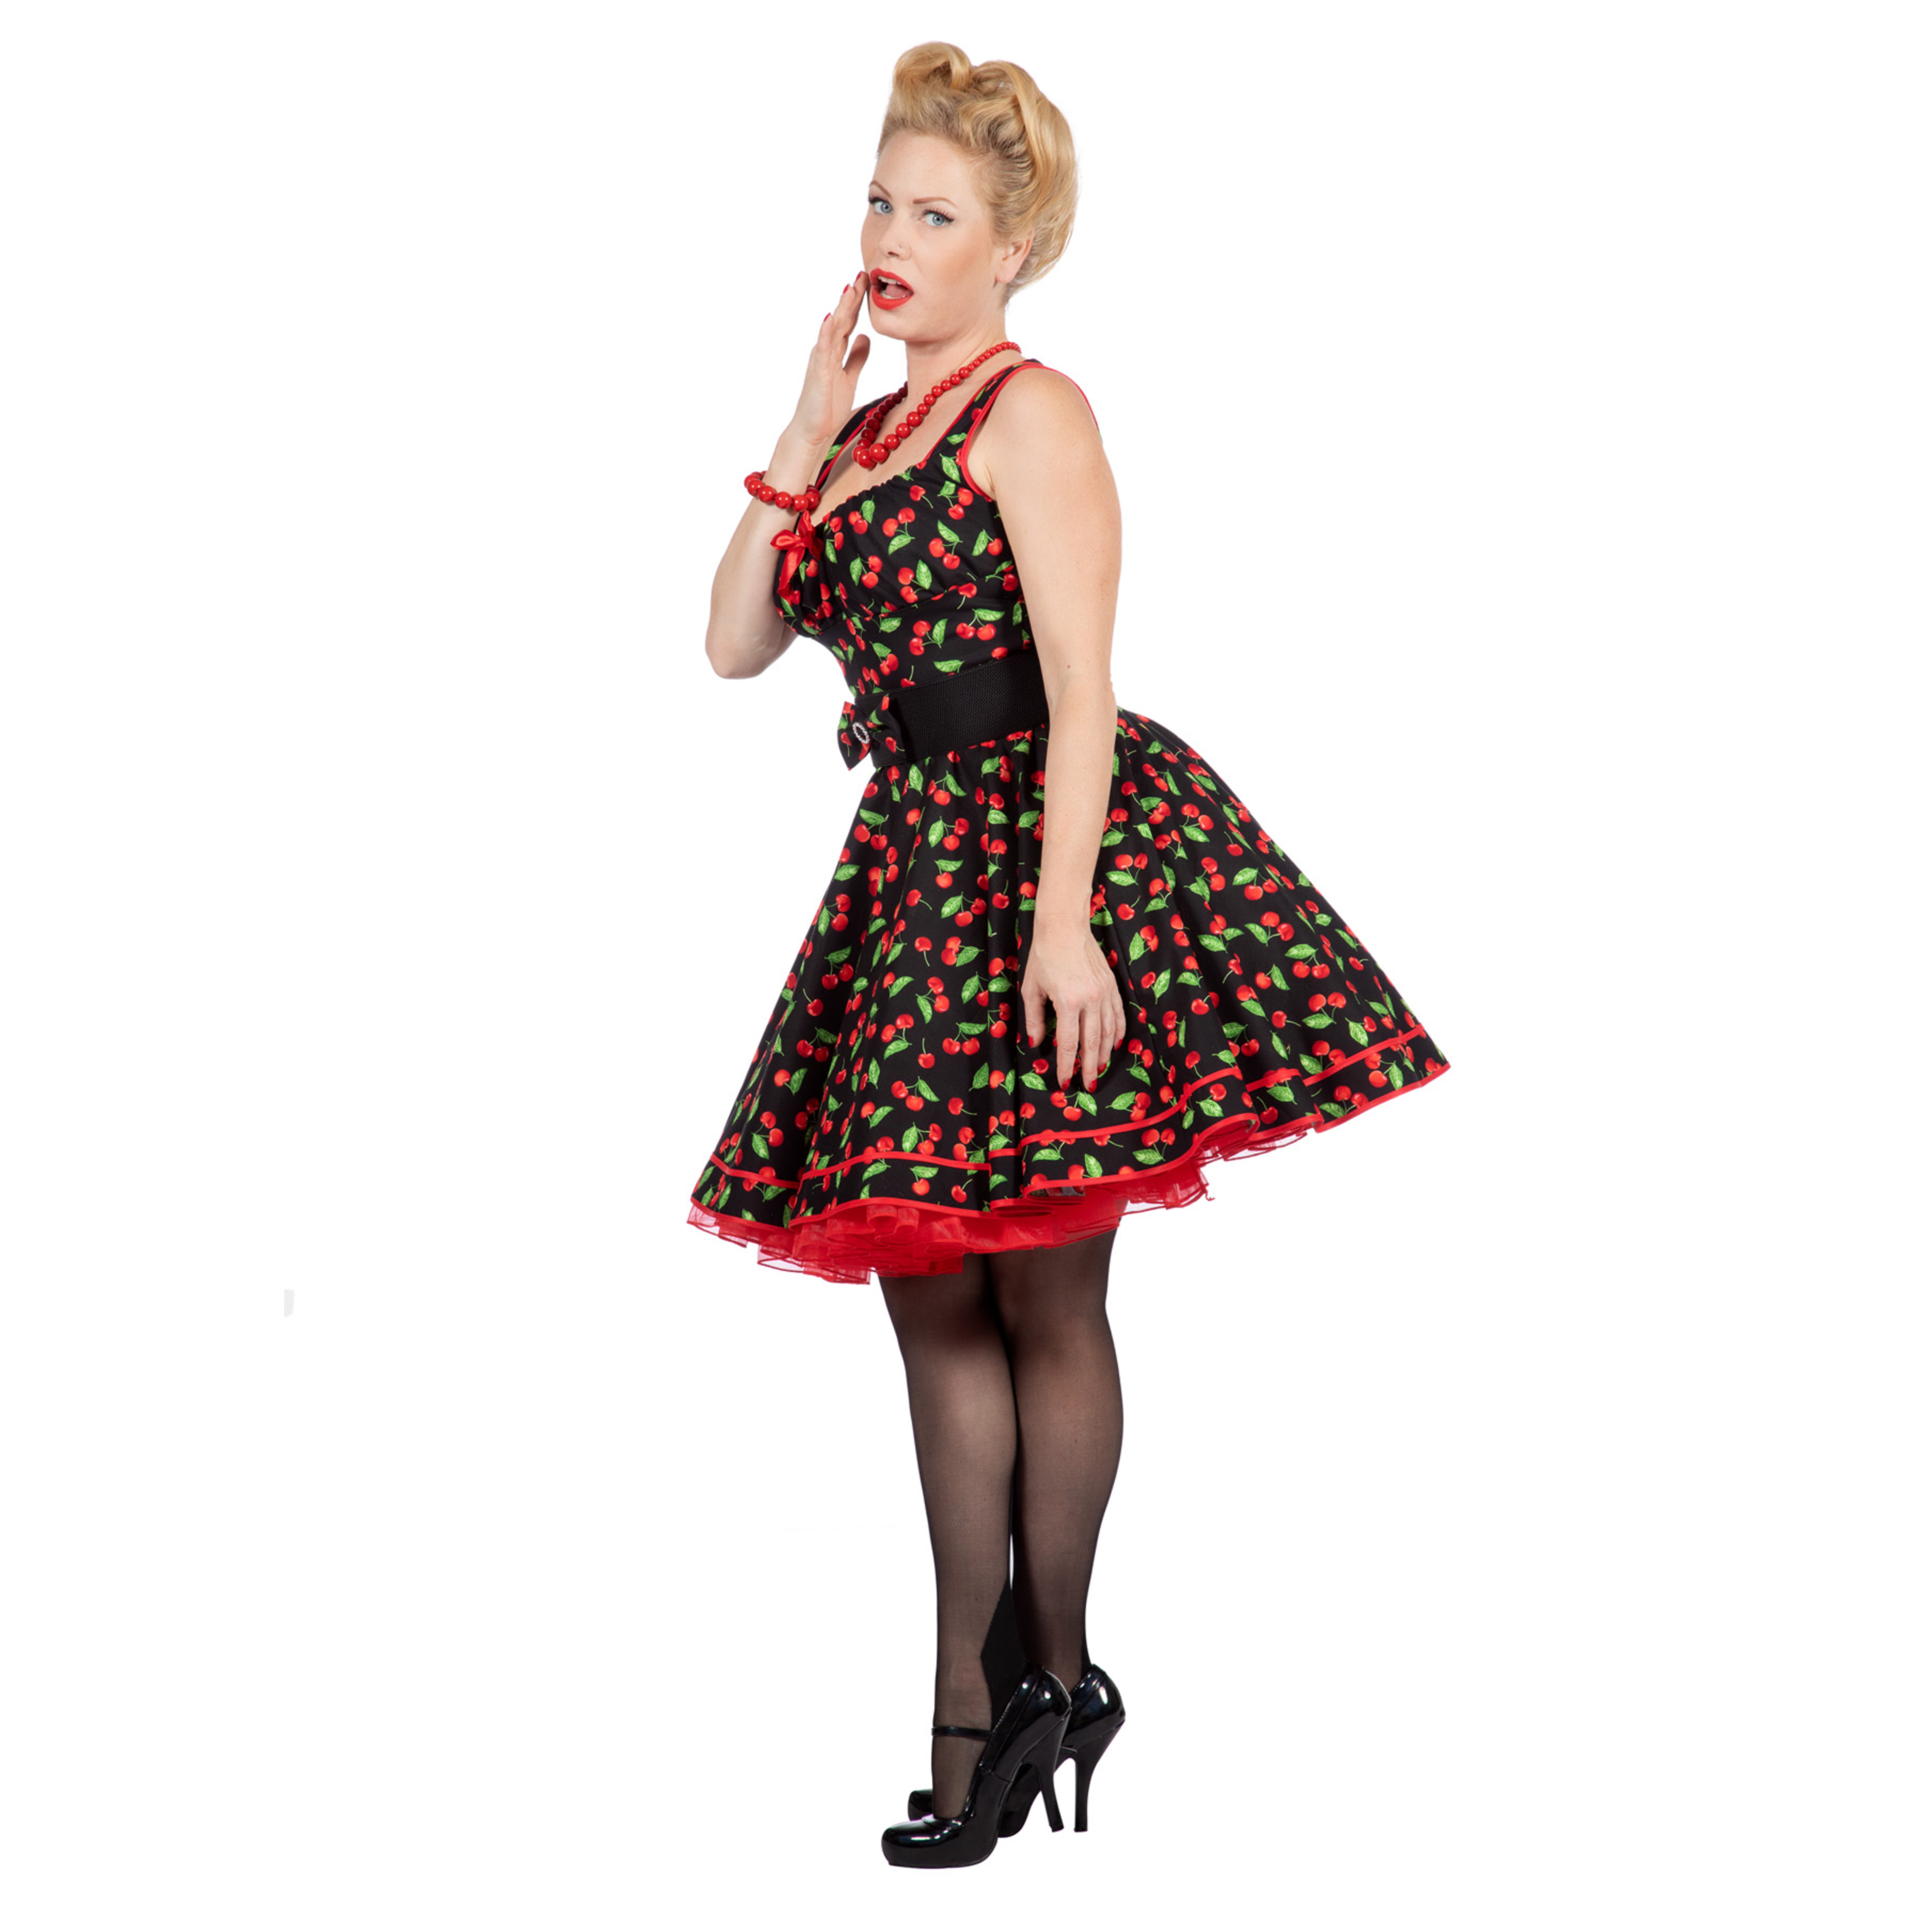 Premium-Line Damen-Kleid Rockabilly Cherry, Gr. 44 Bild 2